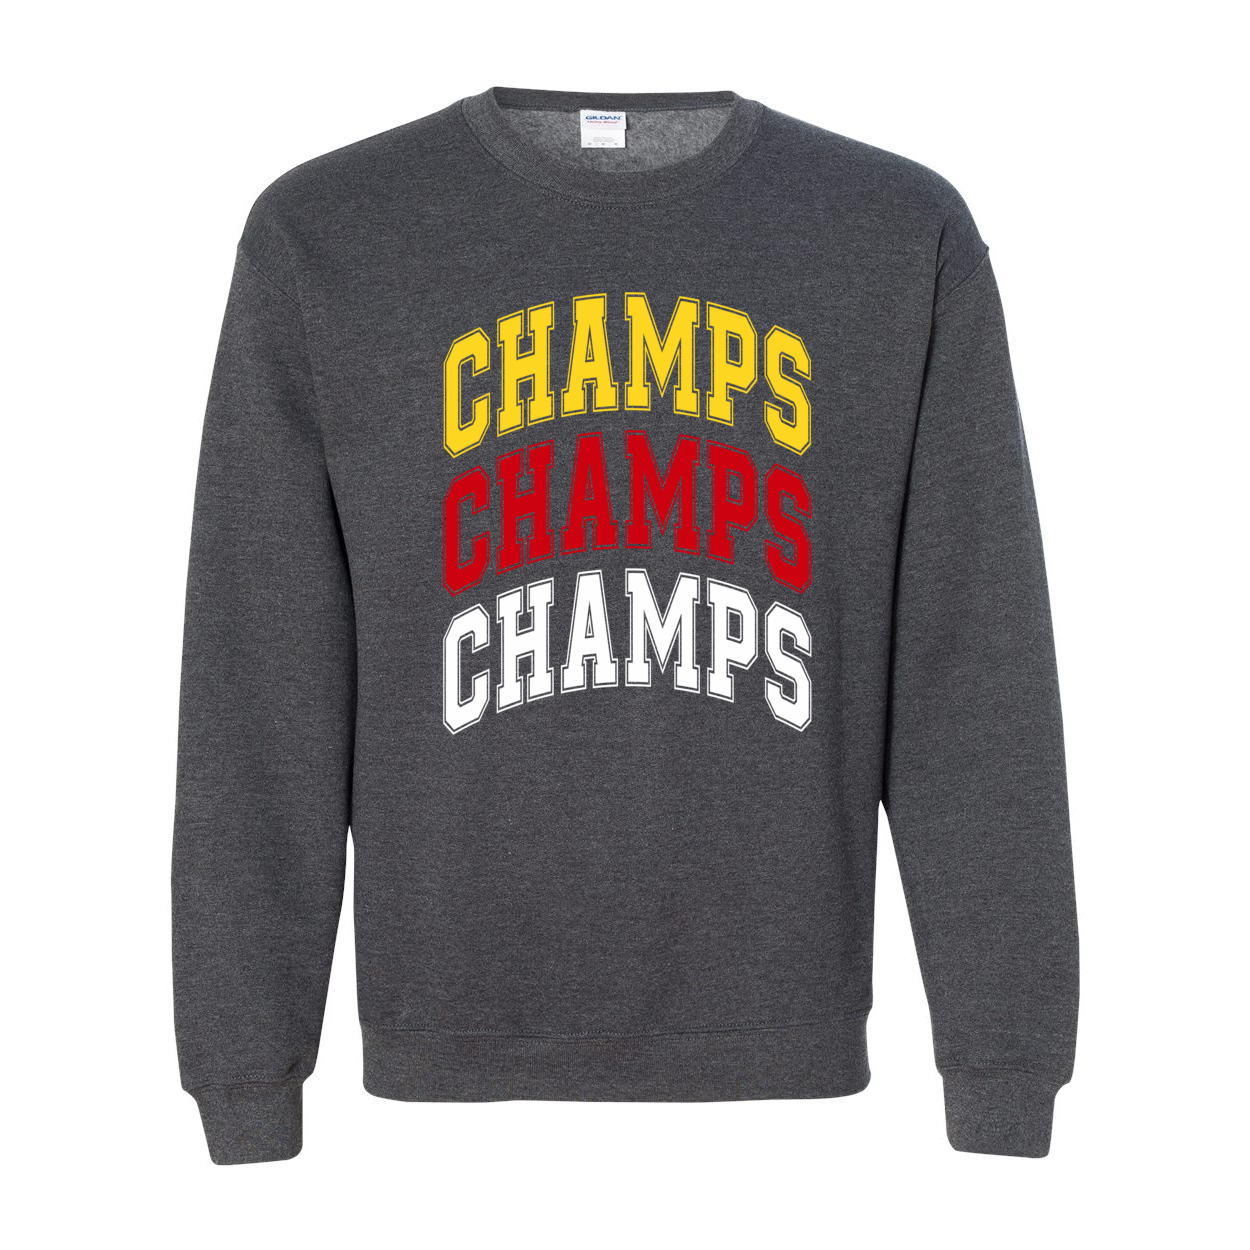 3 Time Champs - Crewneck Sweatshirt